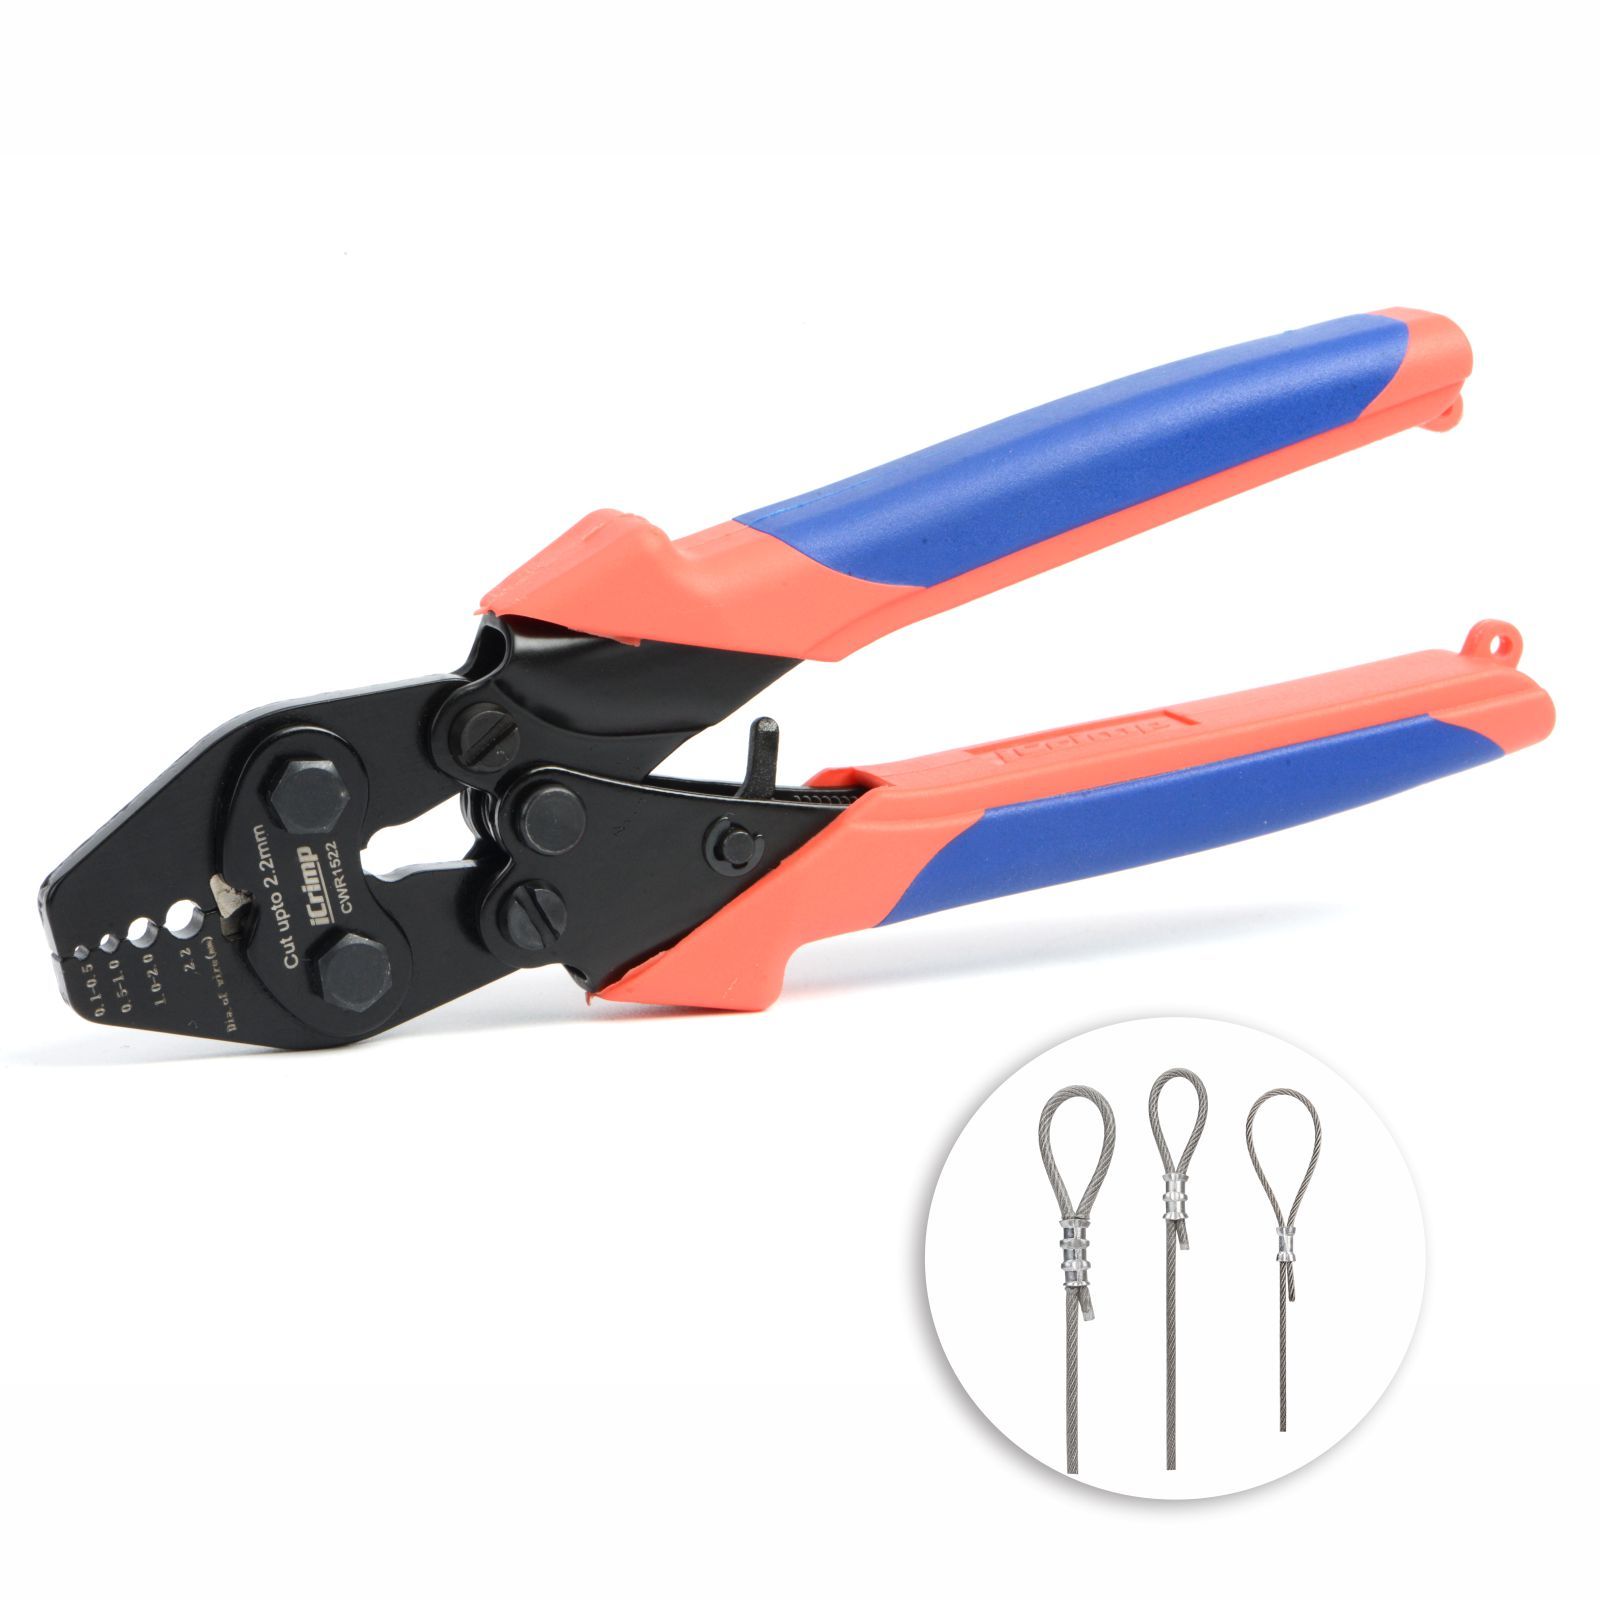 NTD Knipex shears : r/Tools